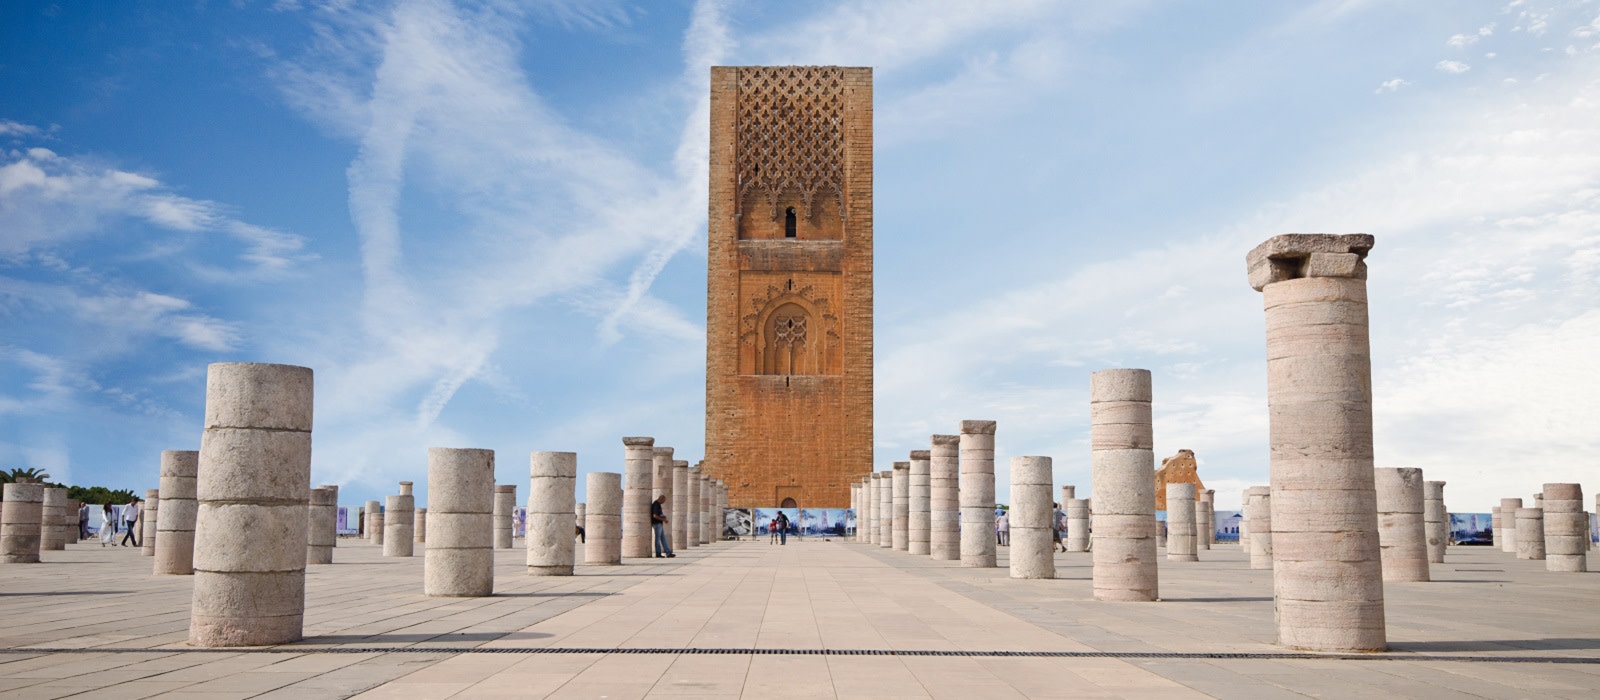 ¡5 días y 4 noches en Marrakech, Casablanca, Rabat y Asilah en Hotel 4* con Media Pensión + Ferry + Guía + Visitas!